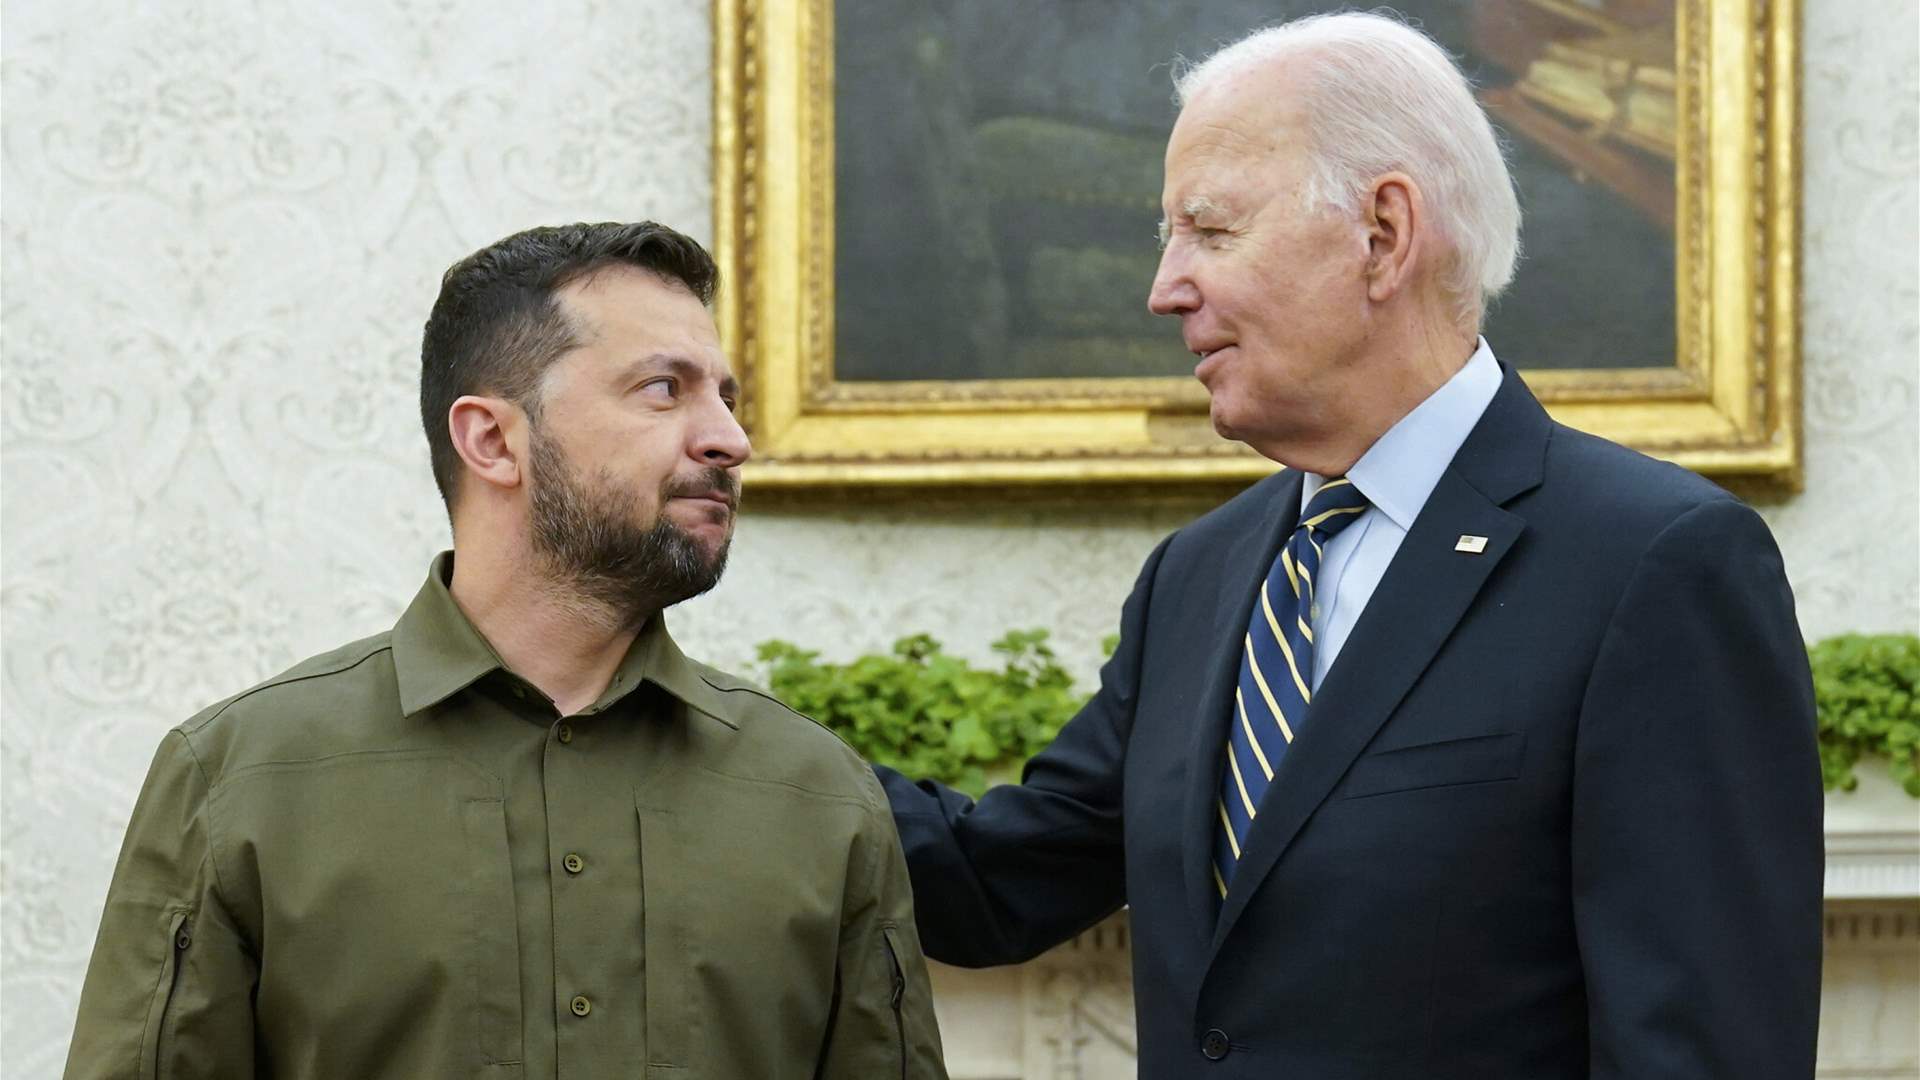 Zelenskyy thanks Biden for &#39;bold steps&#39; on Ukraine